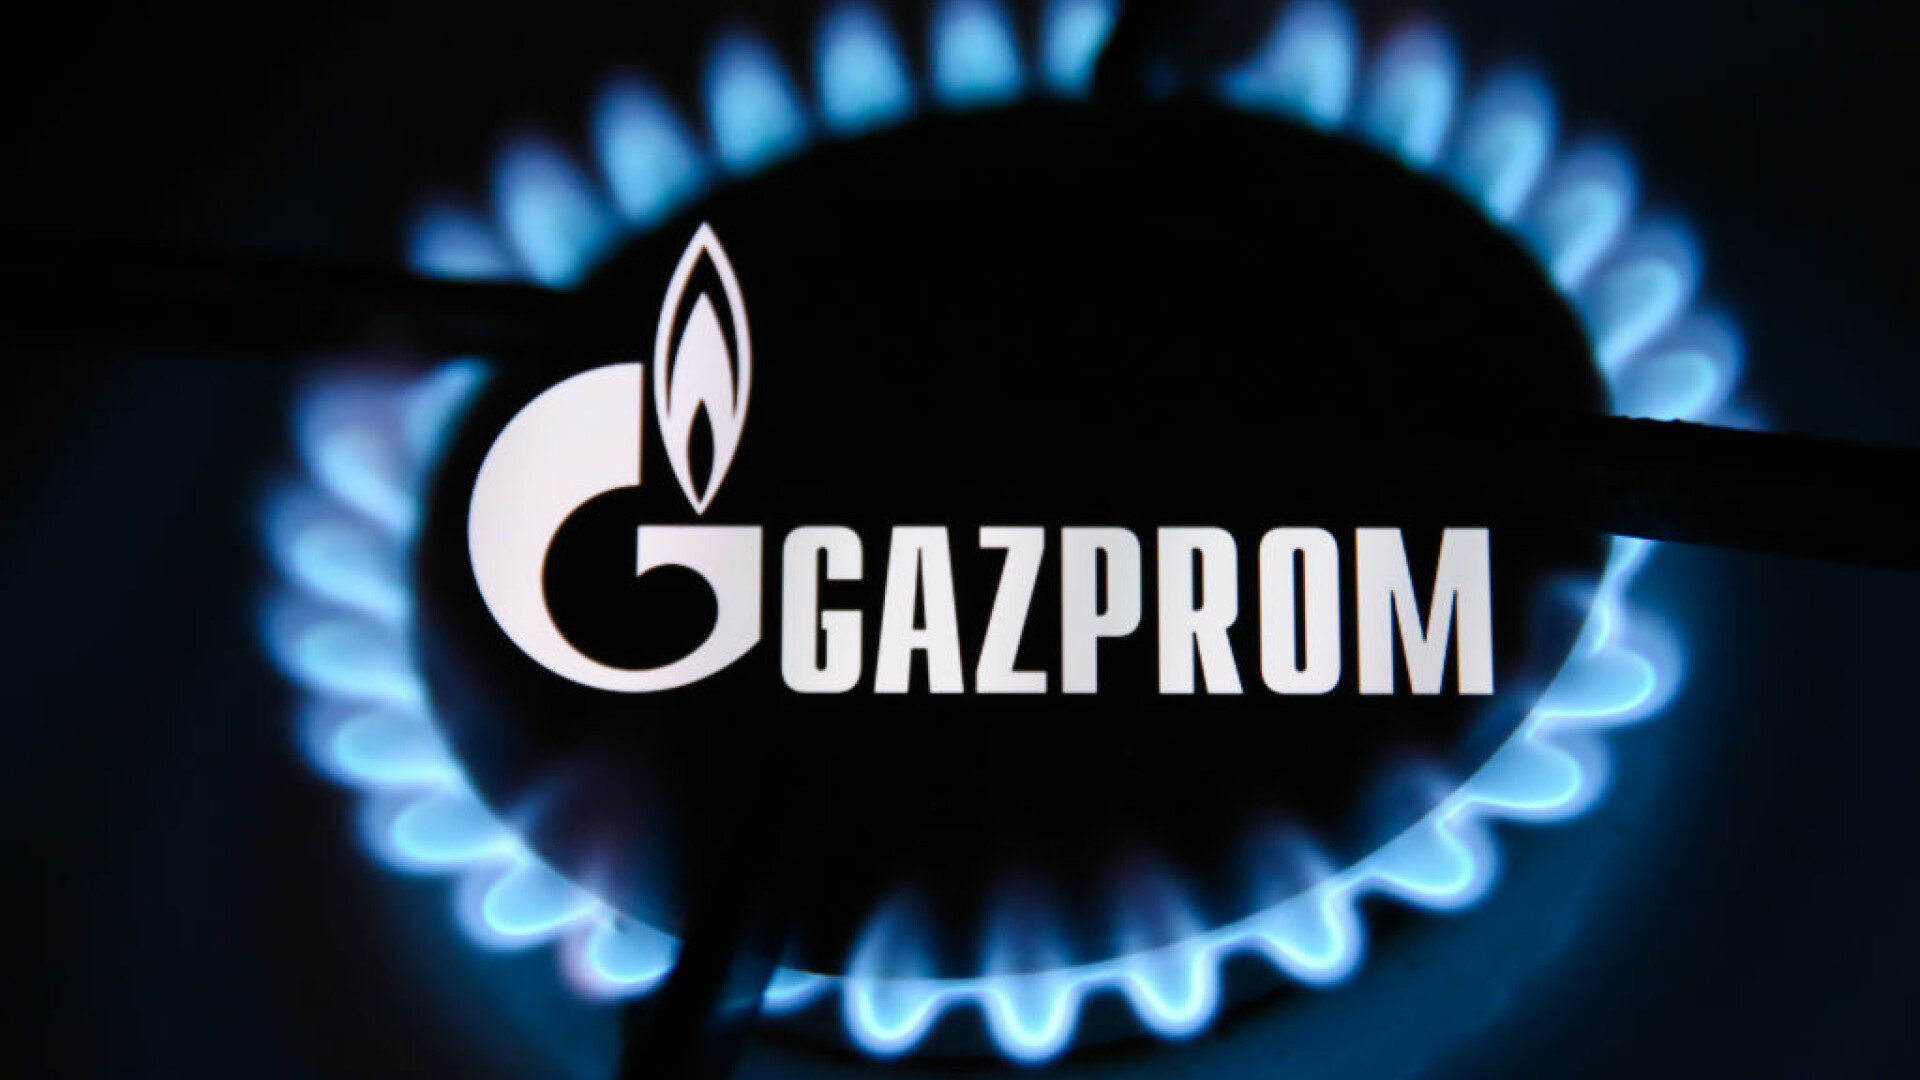 În Moldova s-a declarat stare de alertă din cauza gazelor. România sare în ajutor, ”din puținul pe care îl are”